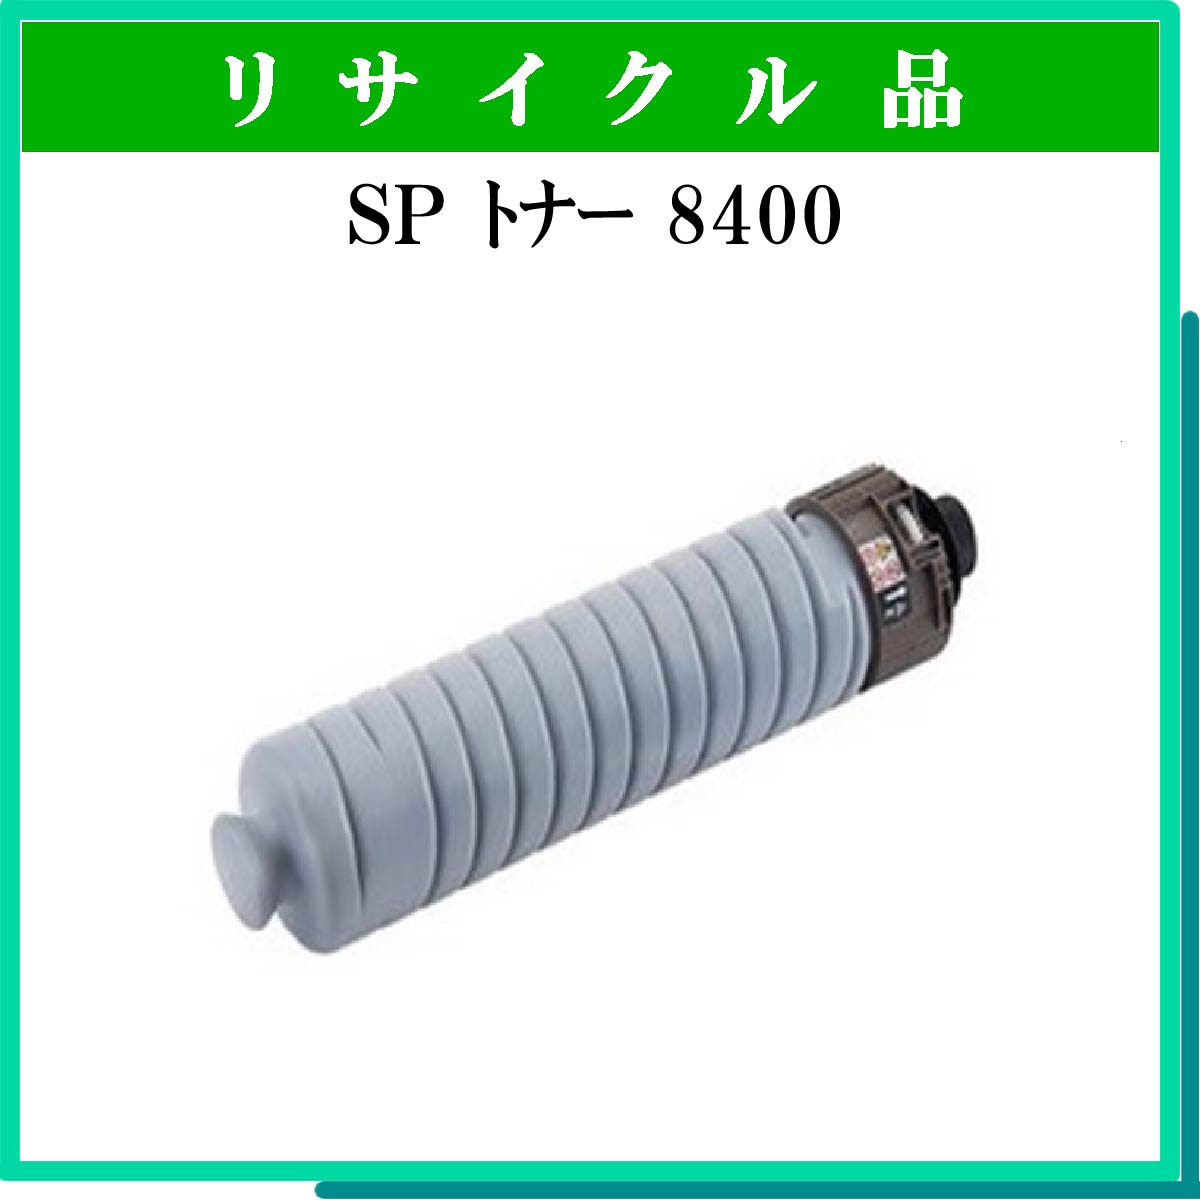 SP ﾄﾅｰ 8400